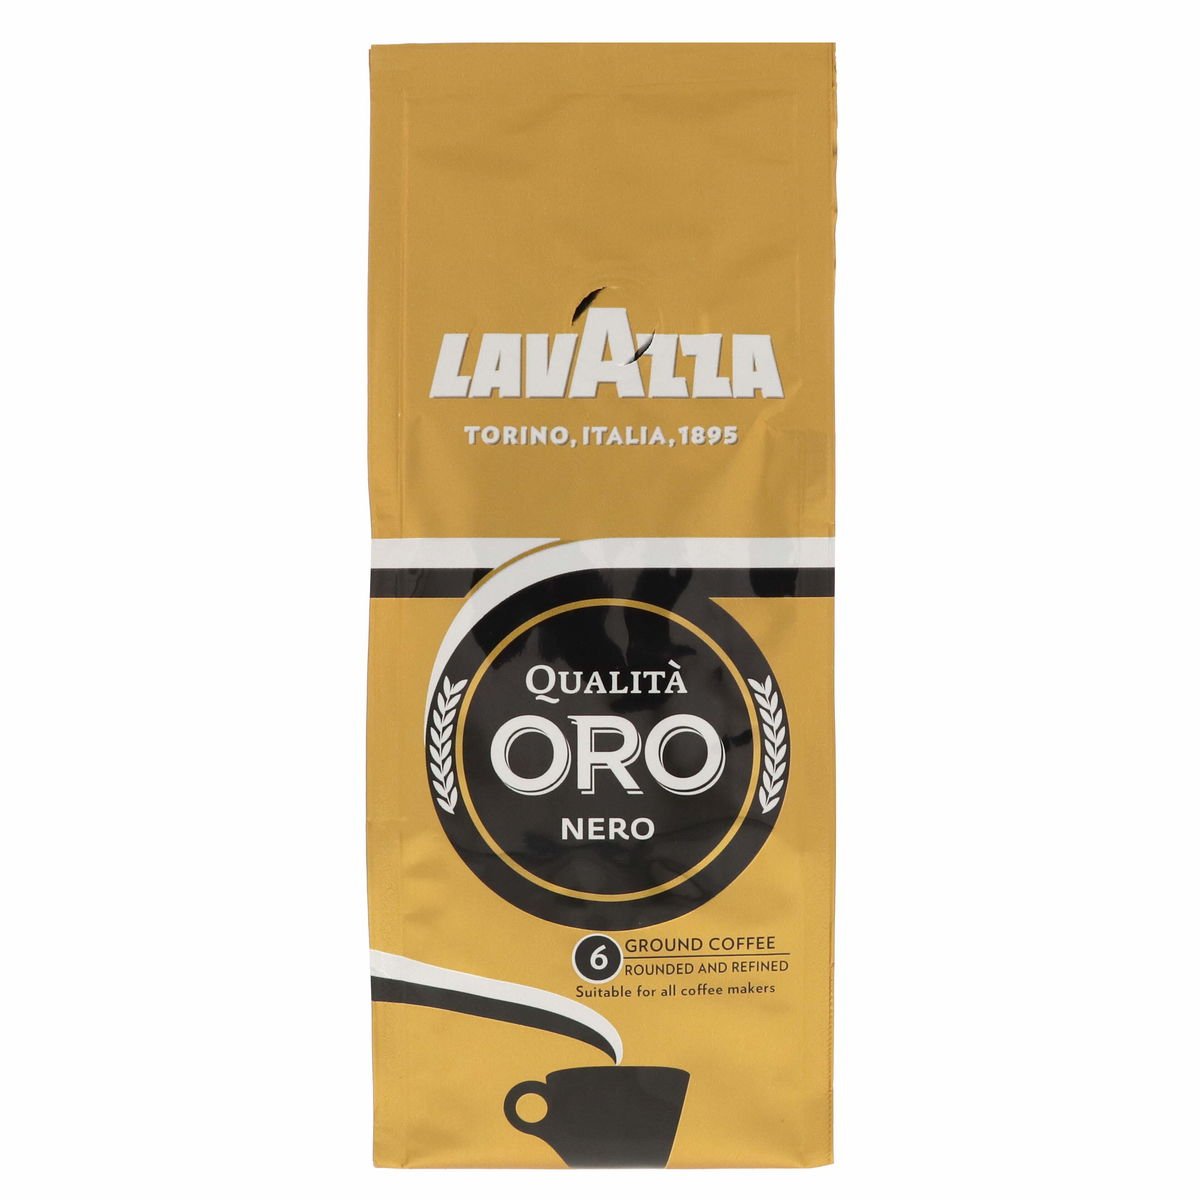 Lavazza Qualita Oro Nero 6 Ground Coffee 200 g